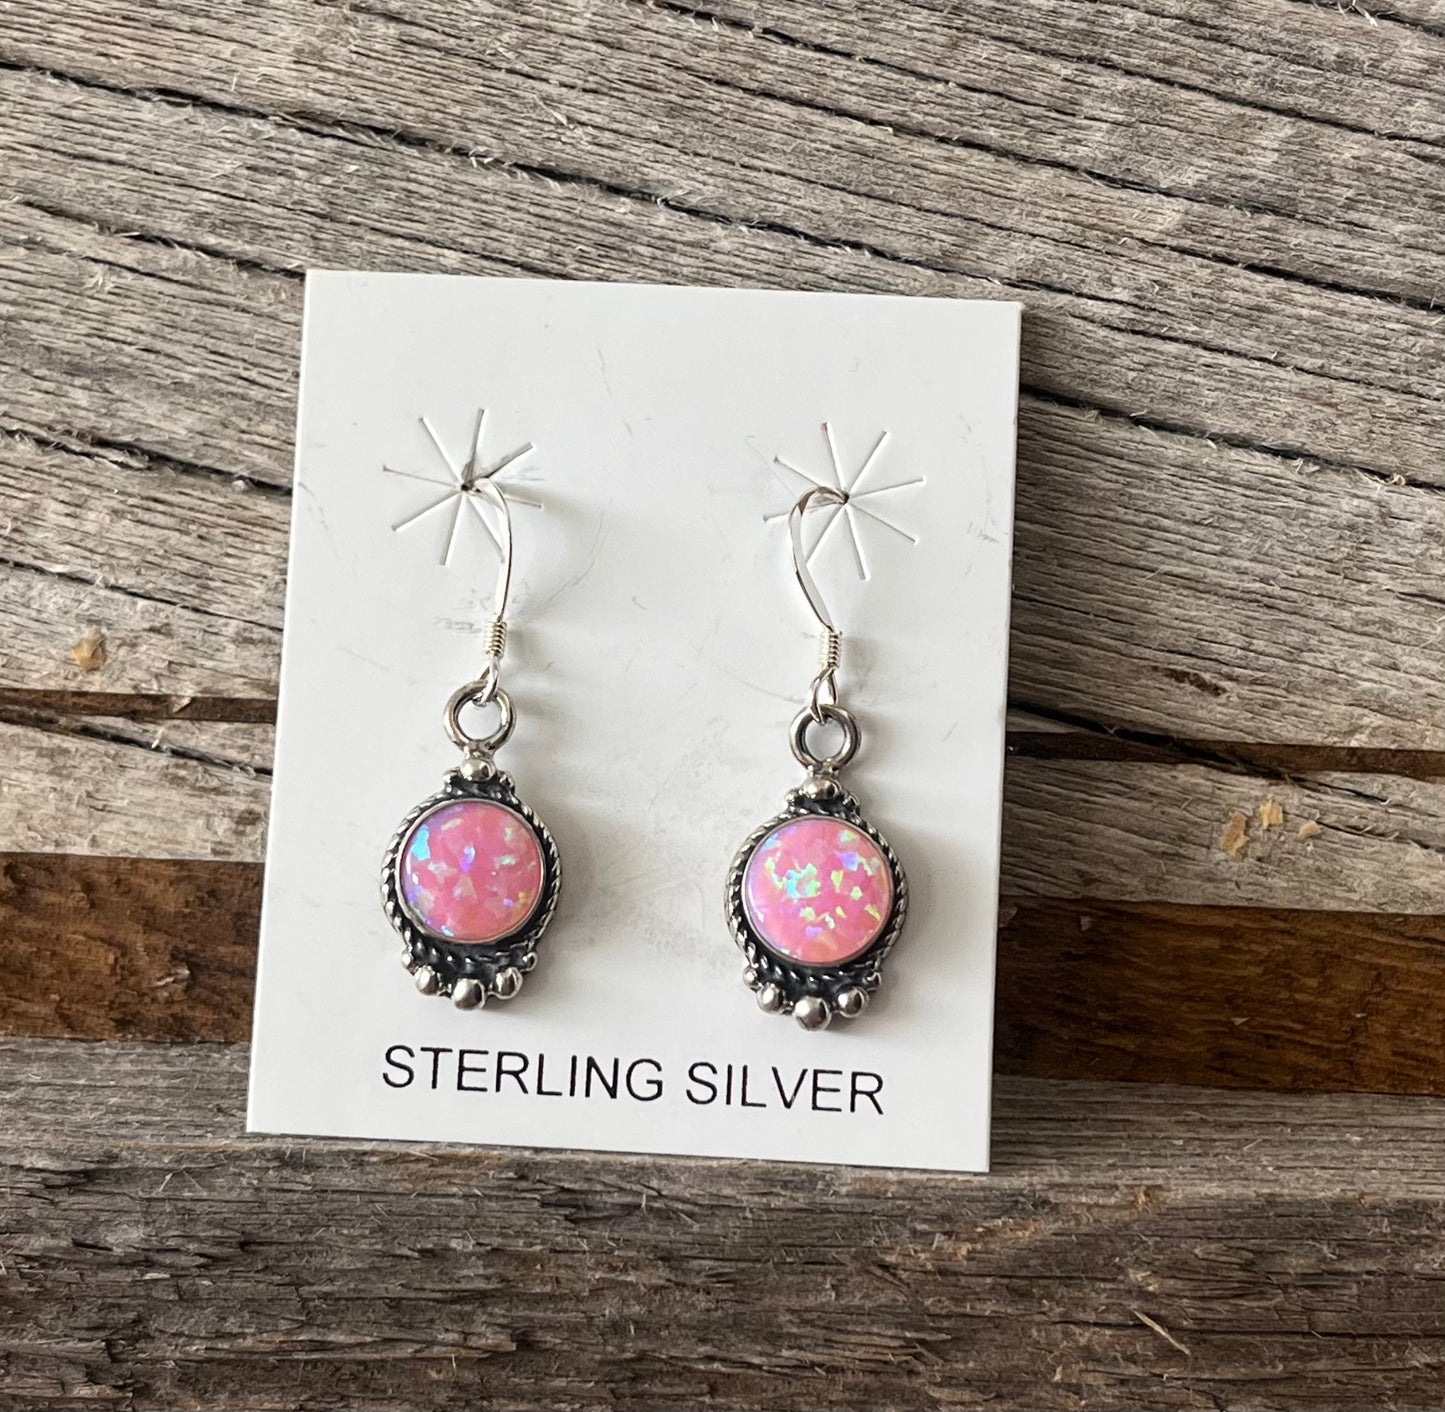 Pink Opal Earrings